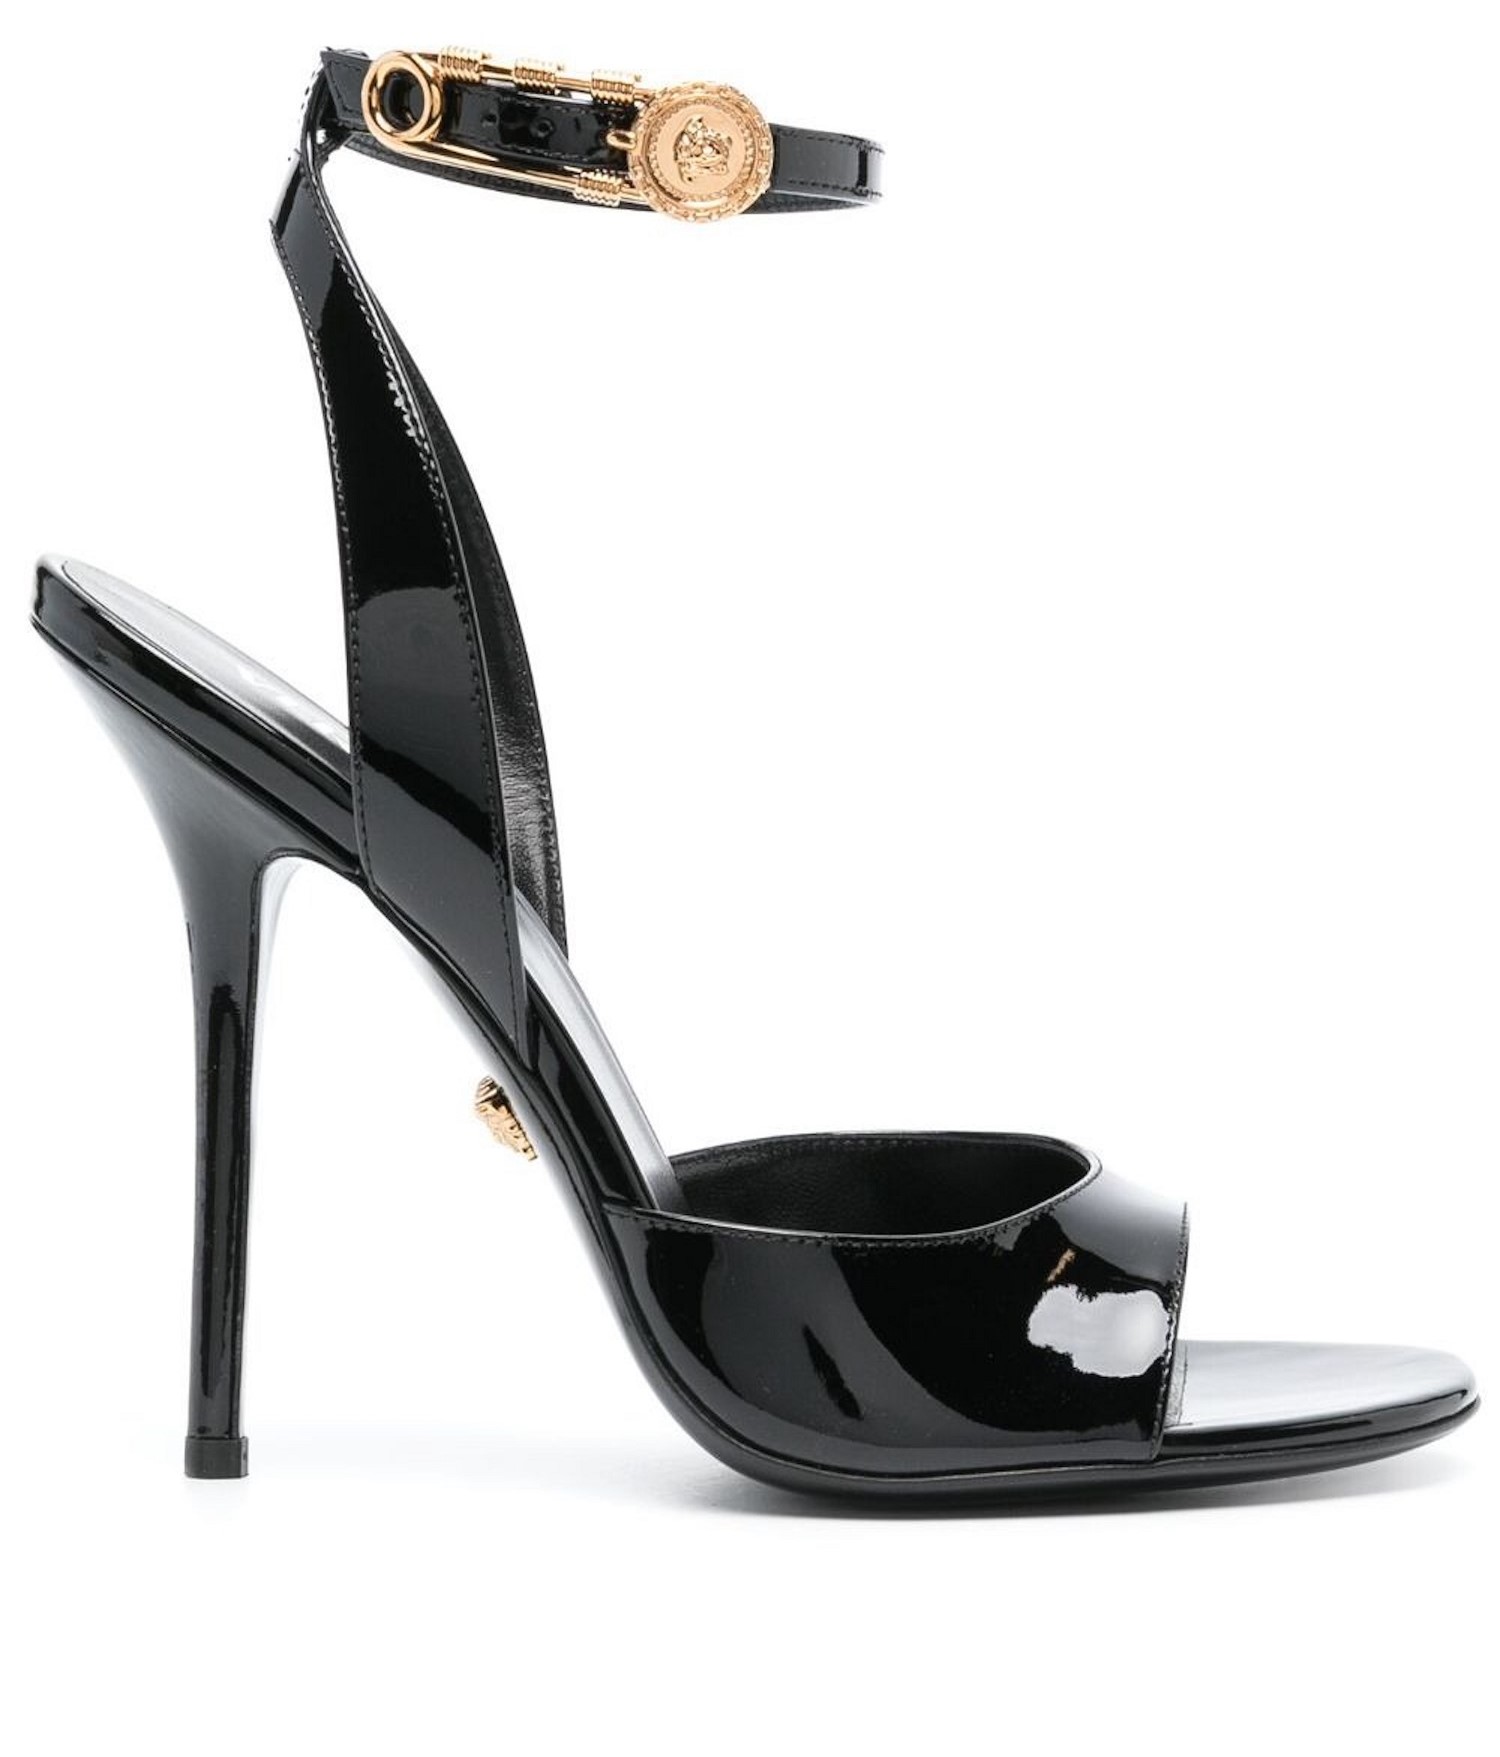 Versace 125 mm heels